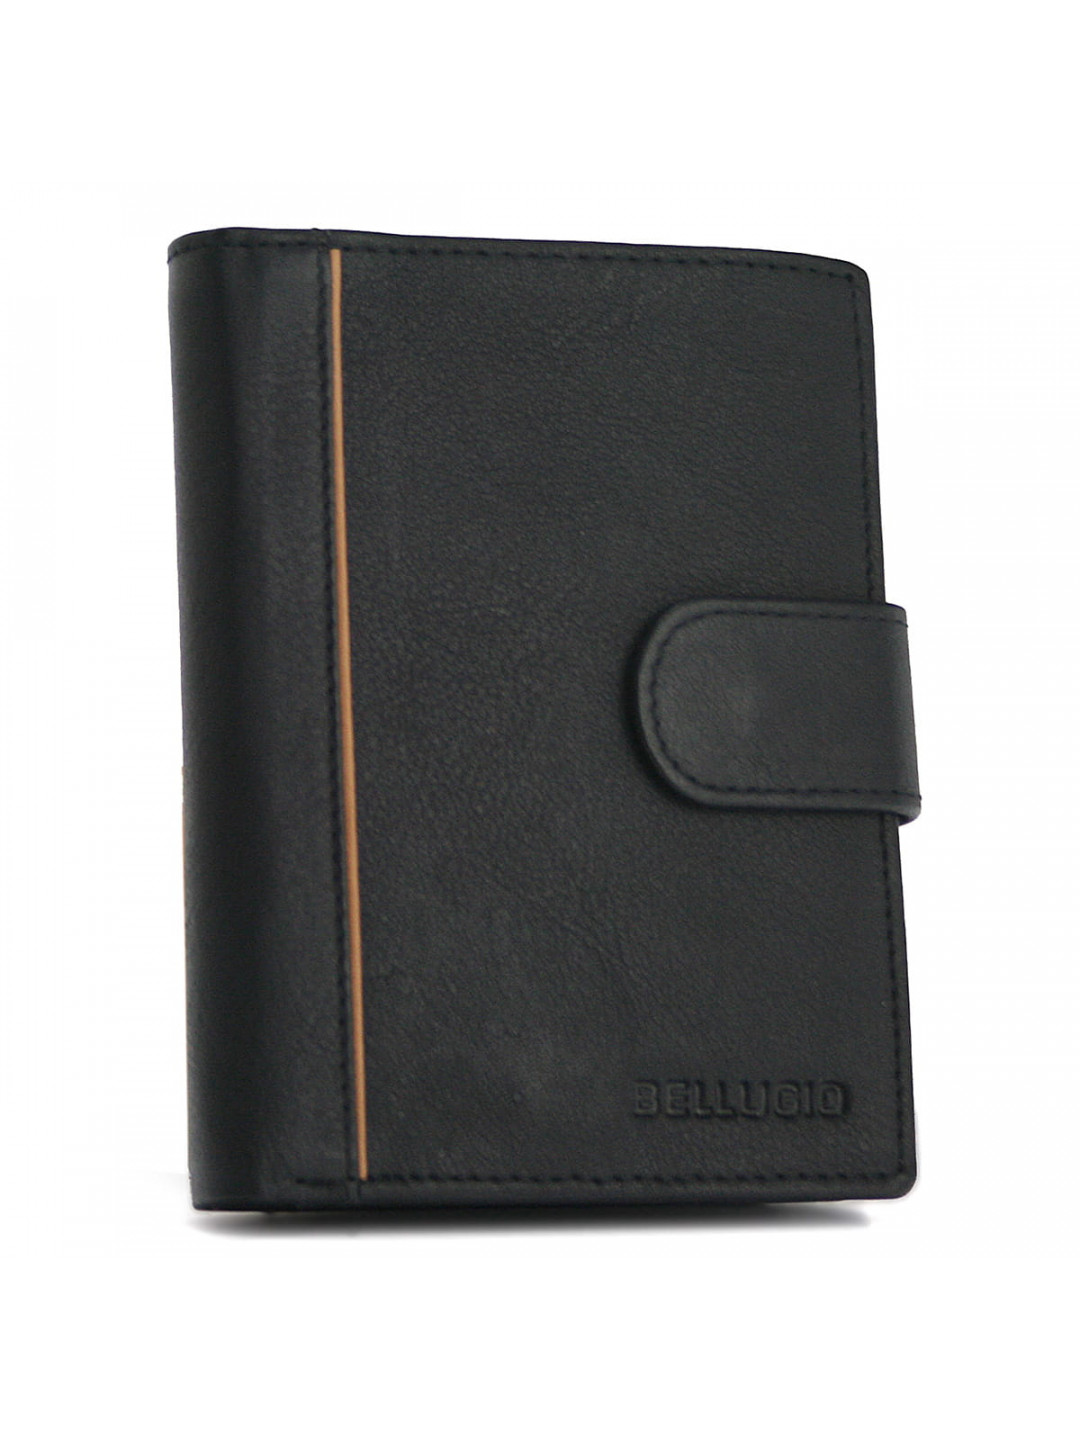 Pánská kožená peněženka Bellugio stylish man černá